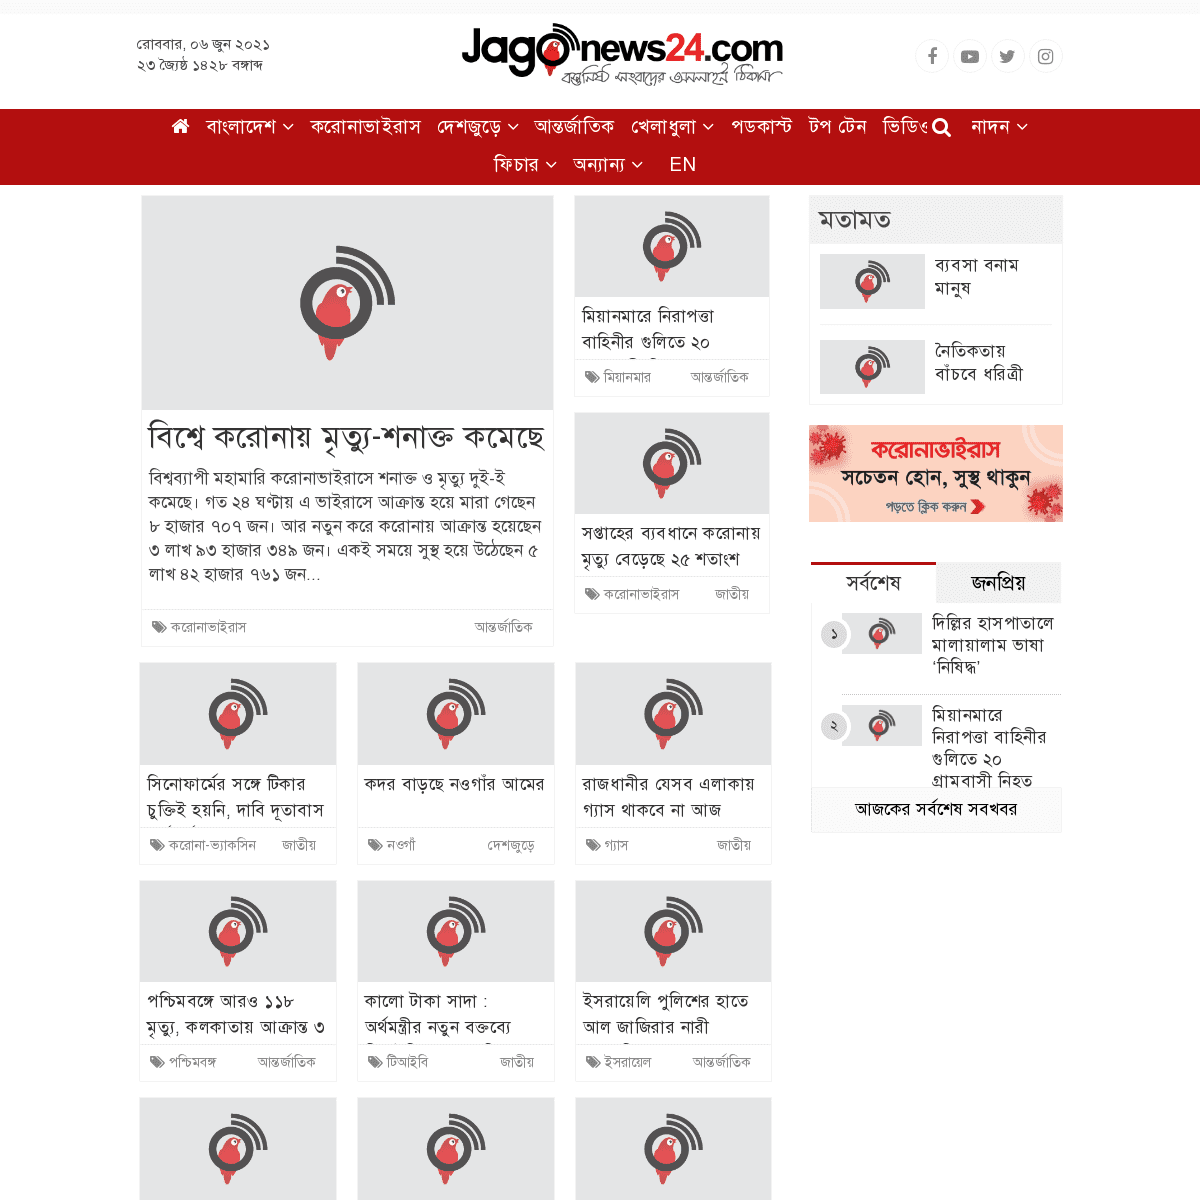 A complete backup of https://jagonews24.com